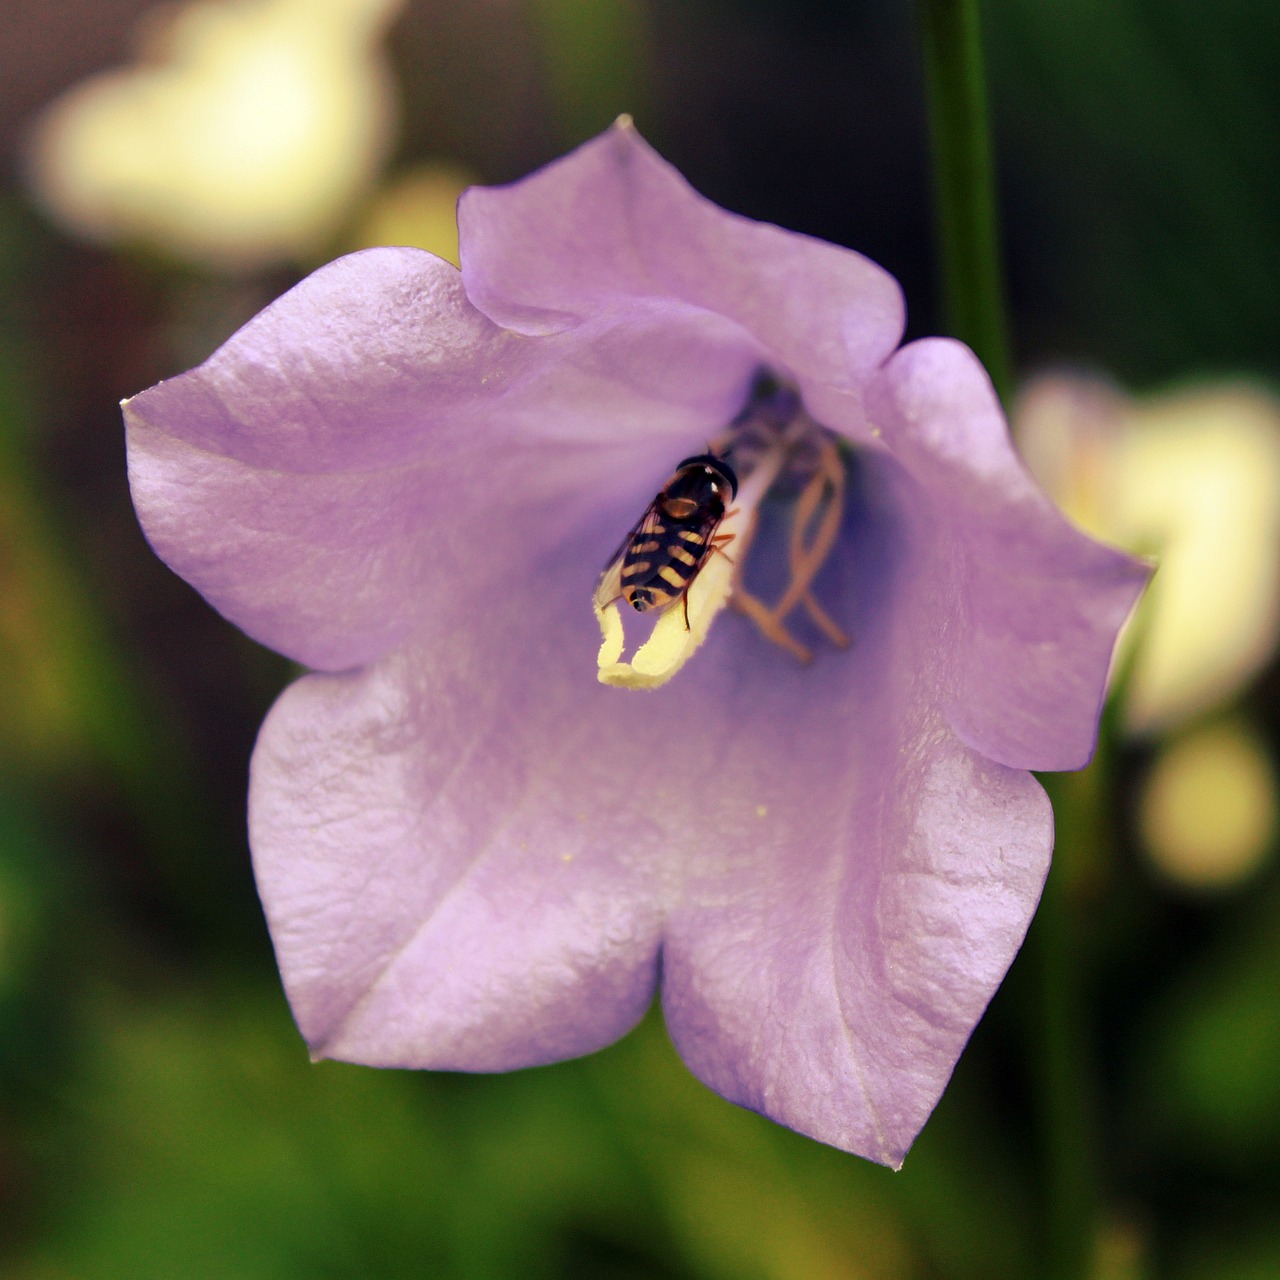 bellflower hover fly blossom free photo